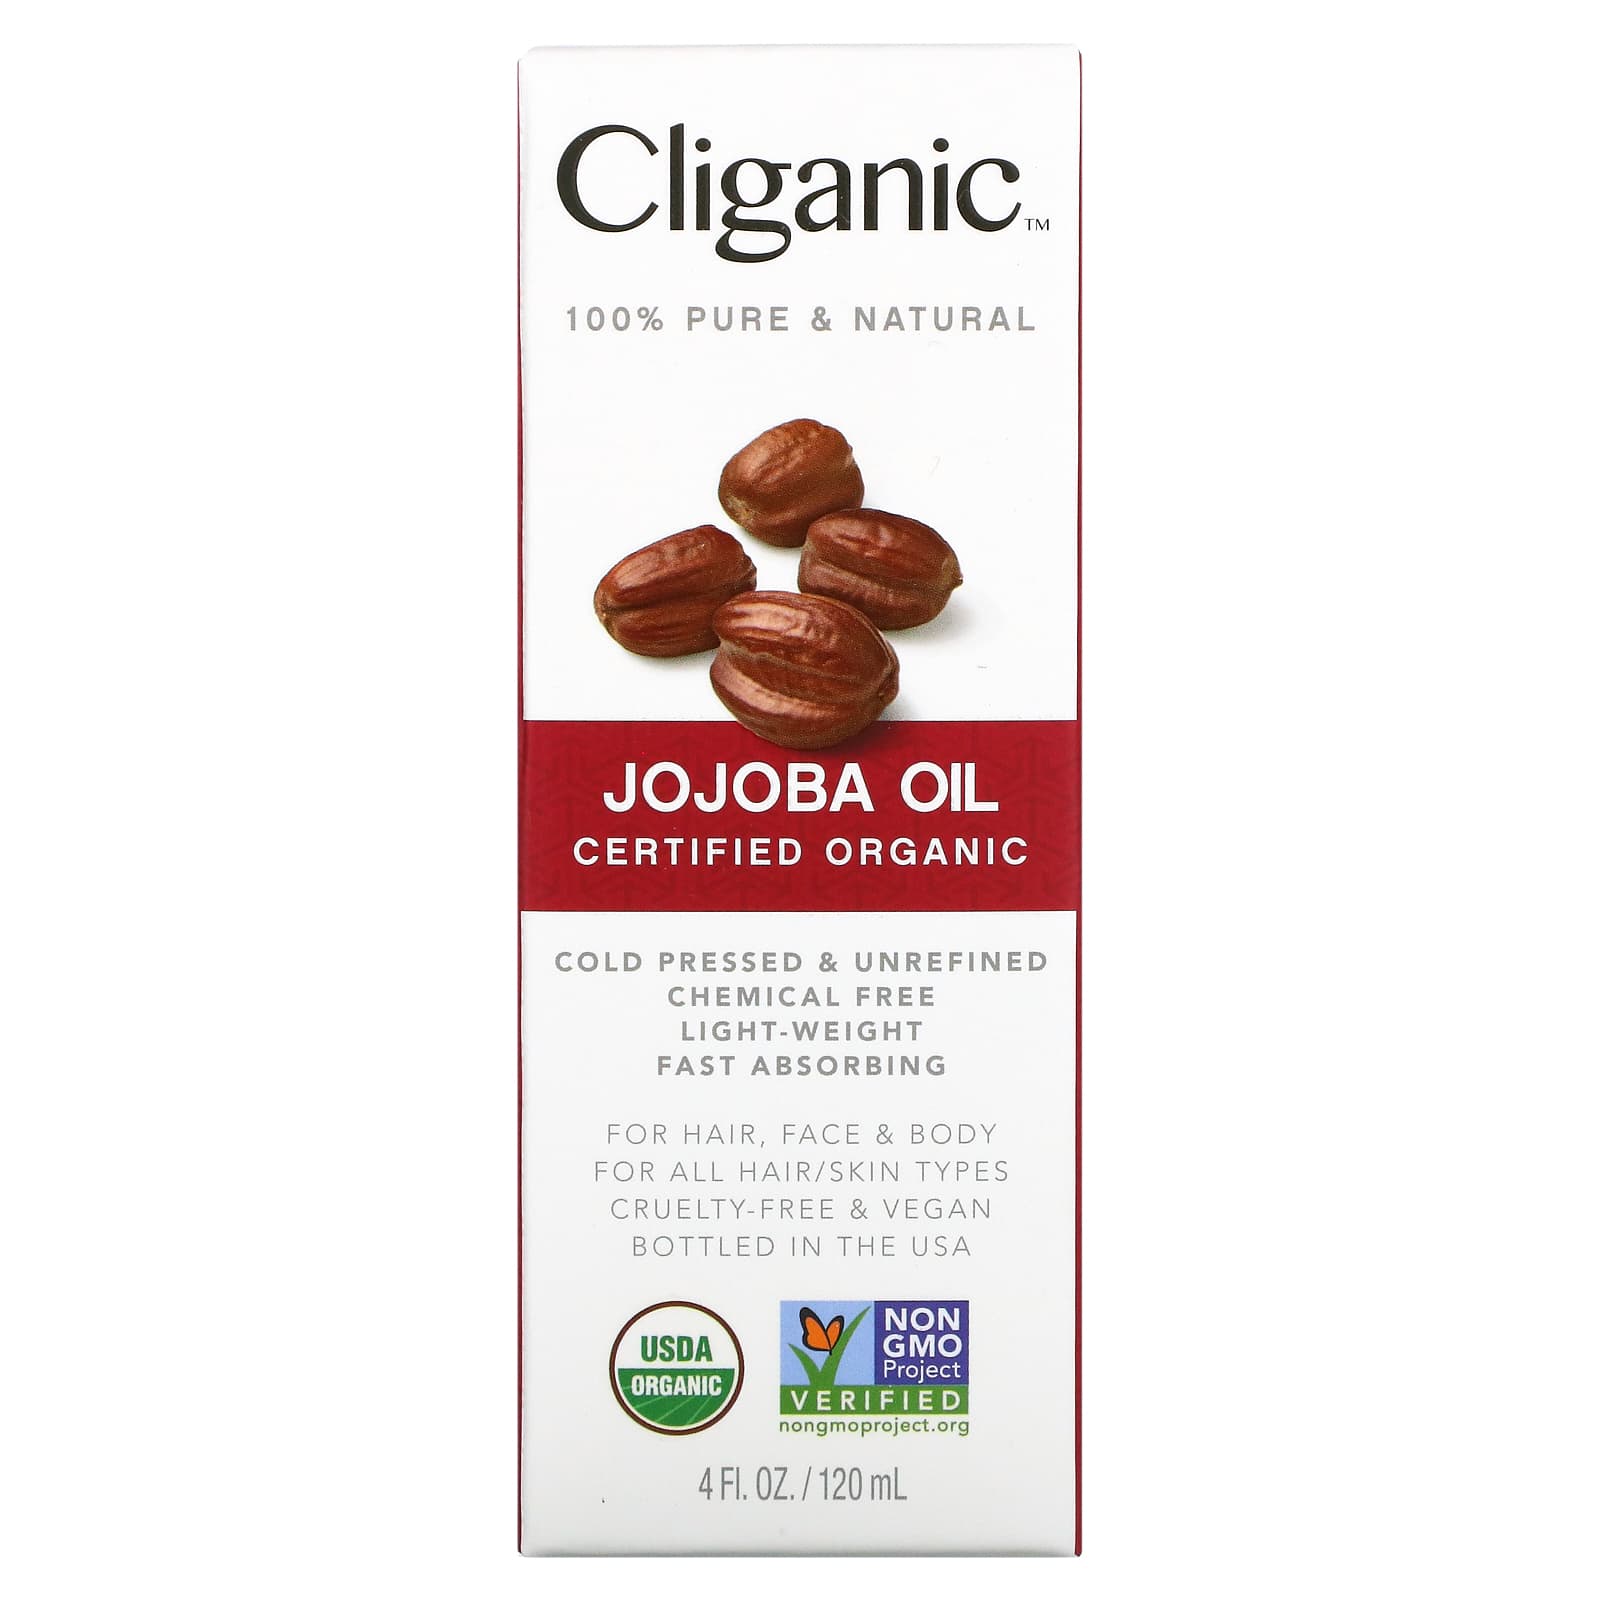 Cliganic jojoba oil benefits